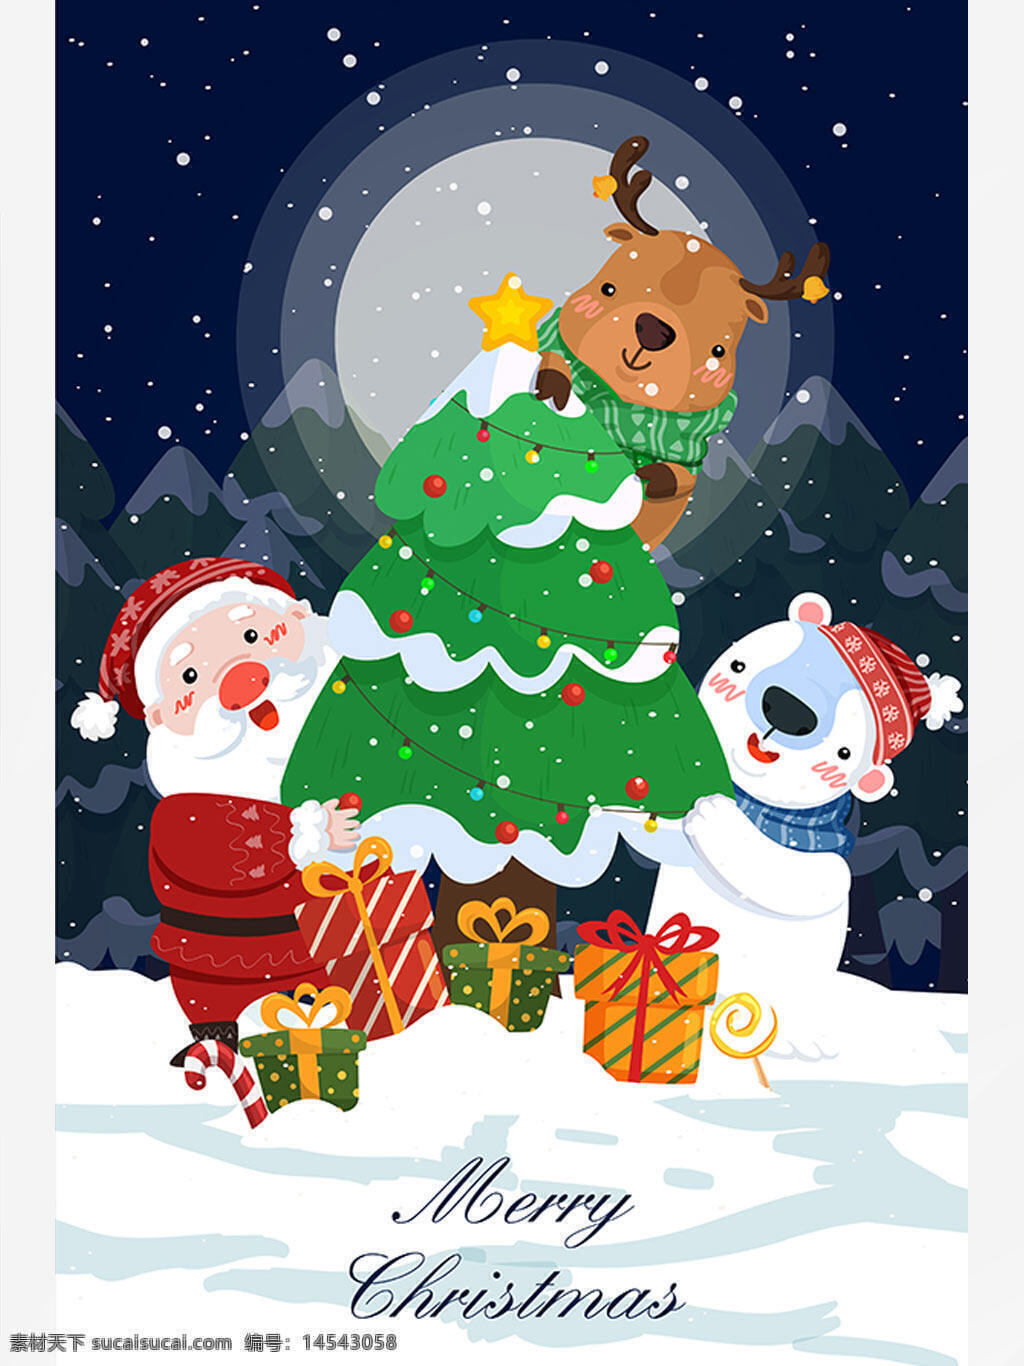 卡通清新圣诞节圣诞老人麋鹿冬夜雪景插画 卡通 清新 圣诞节 圣诞老人 麋鹿 冬夜雪景 插画